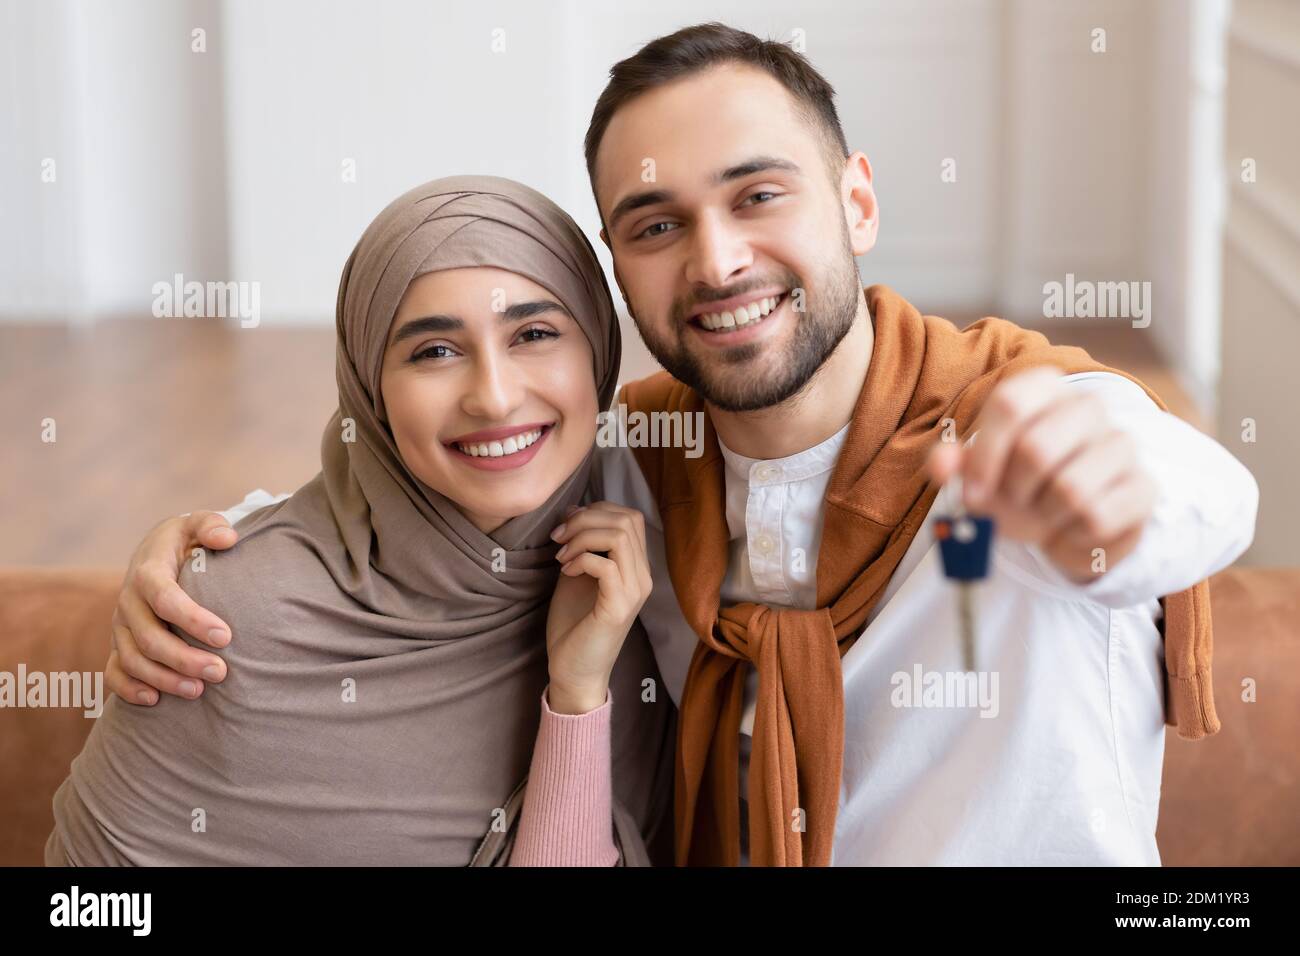 Allegra Famiglia musulmana giovane mostrando New House Key seduta al chiuso Foto Stock